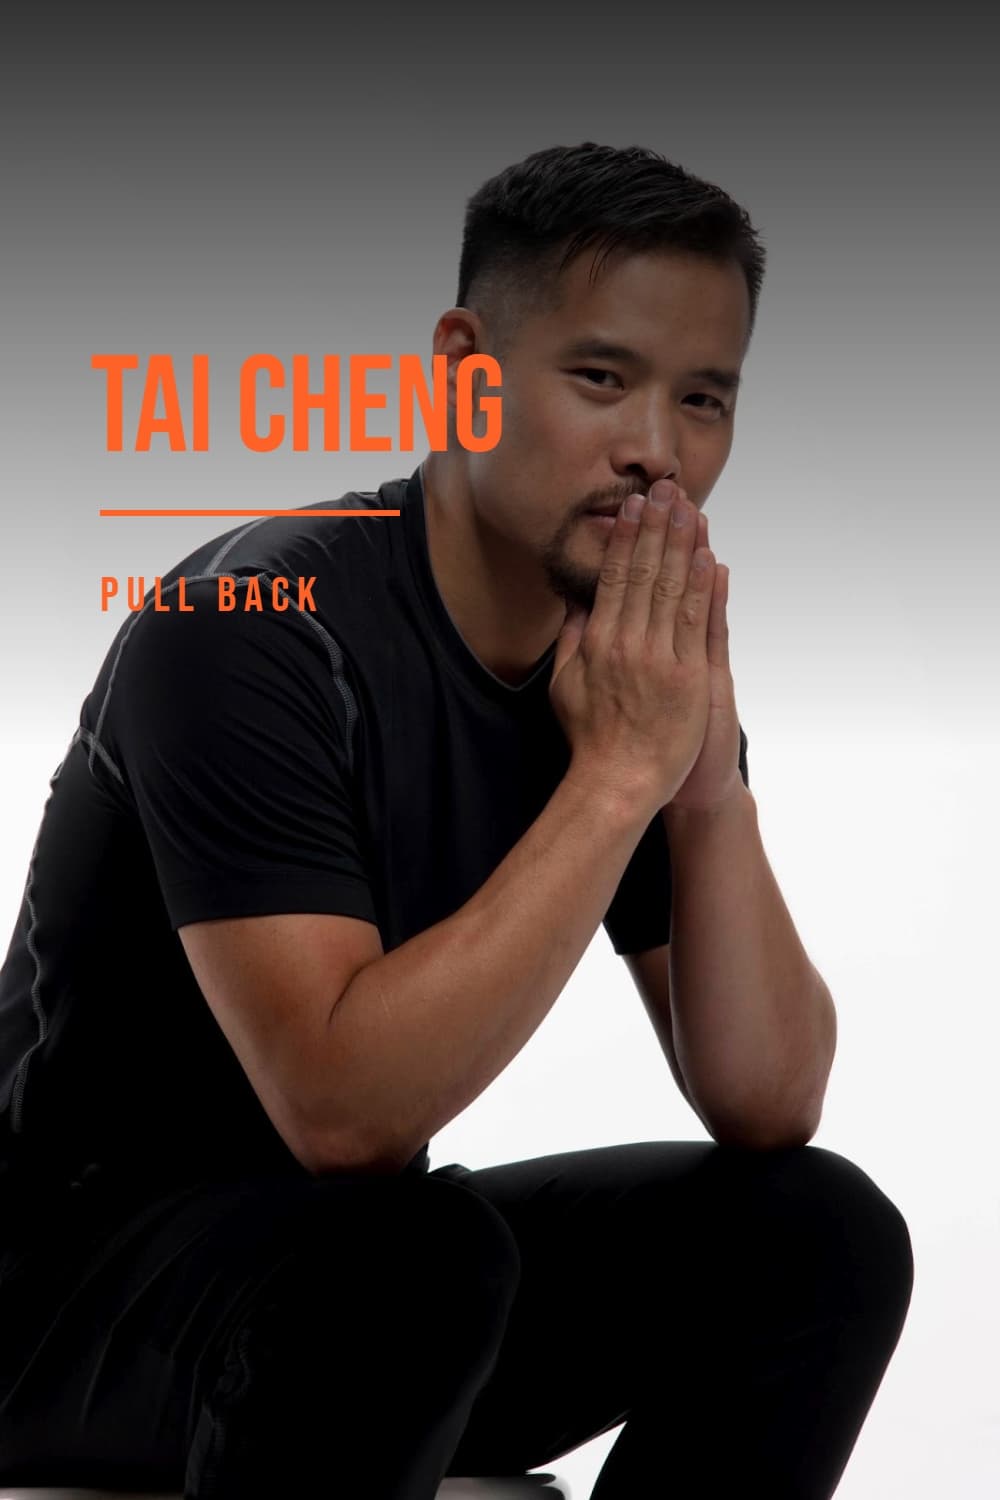 Tai Cheng - Pull Back